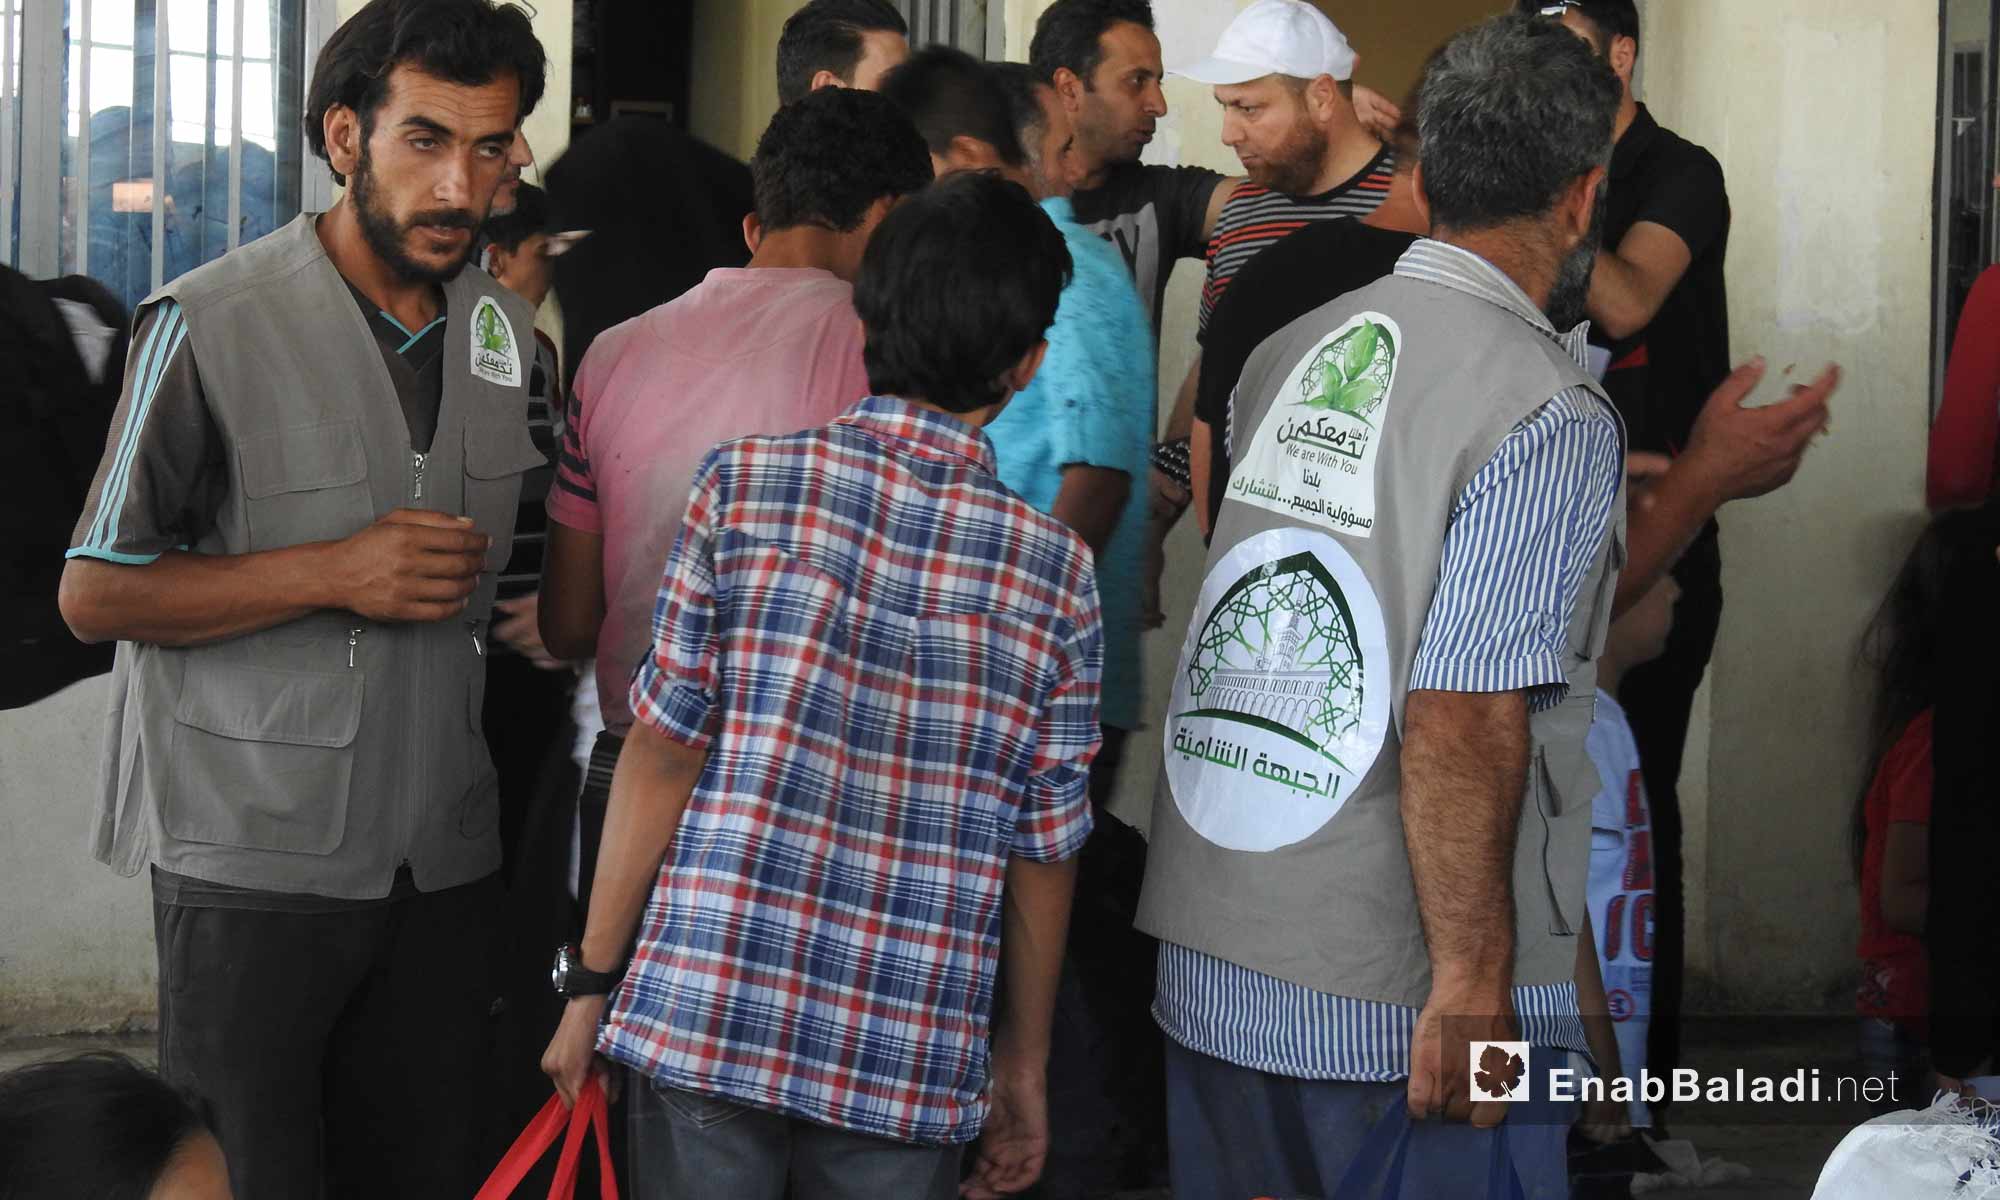 أهالي ريف حلب الشمالي المقيمين في تركيا أثناء زيارتهم شمال حلب عبر معبر باب السلامة - 13 حزيران 2017 - (عنب بلدي)